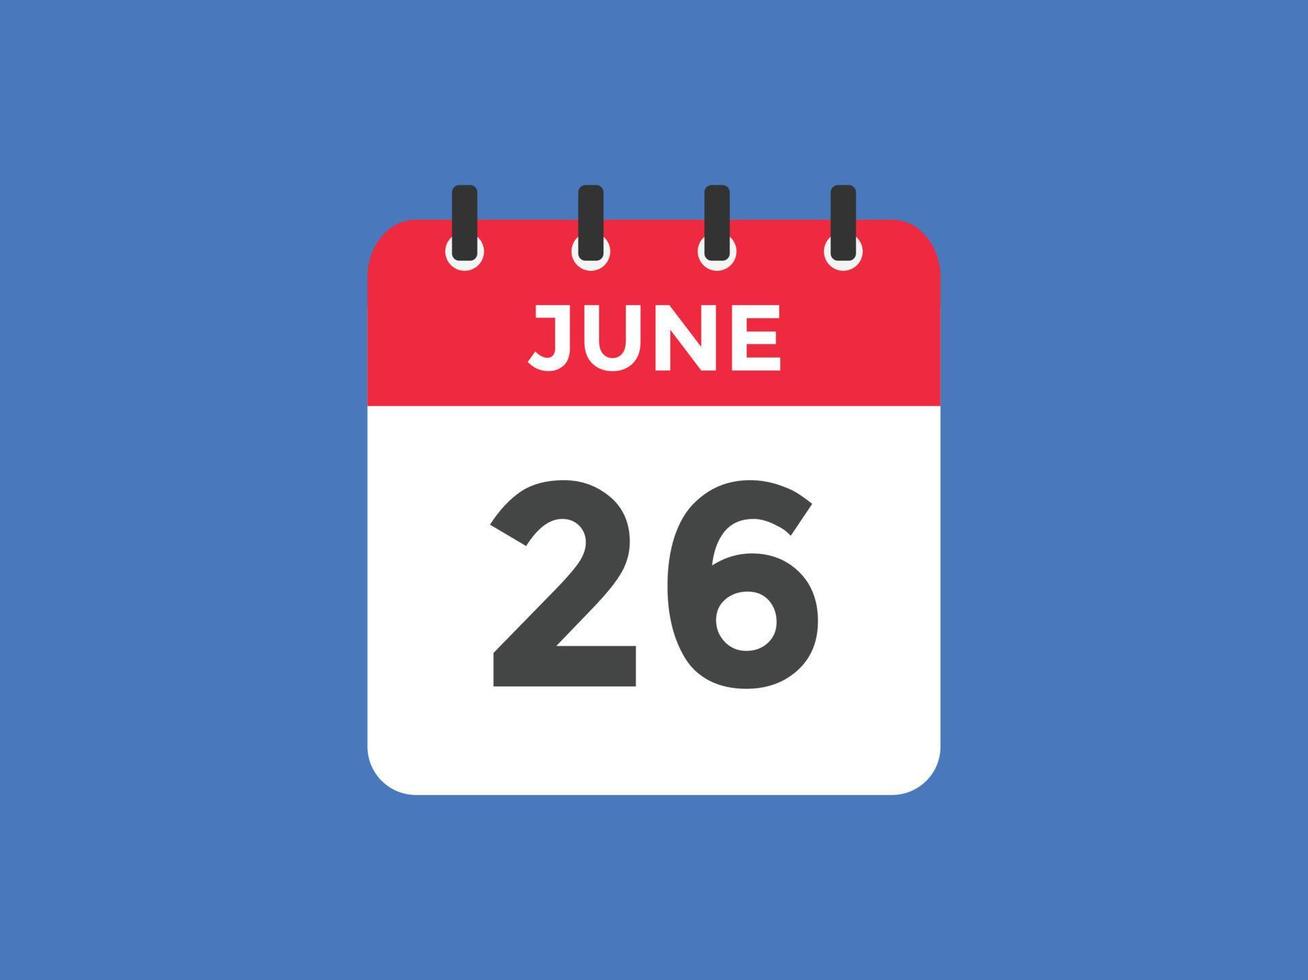 Recordatorio del calendario del 26 de junio. Plantilla de icono de calendario diario del 26 de junio. plantilla de diseño de icono de calendario 26 de junio. ilustración vectorial vector